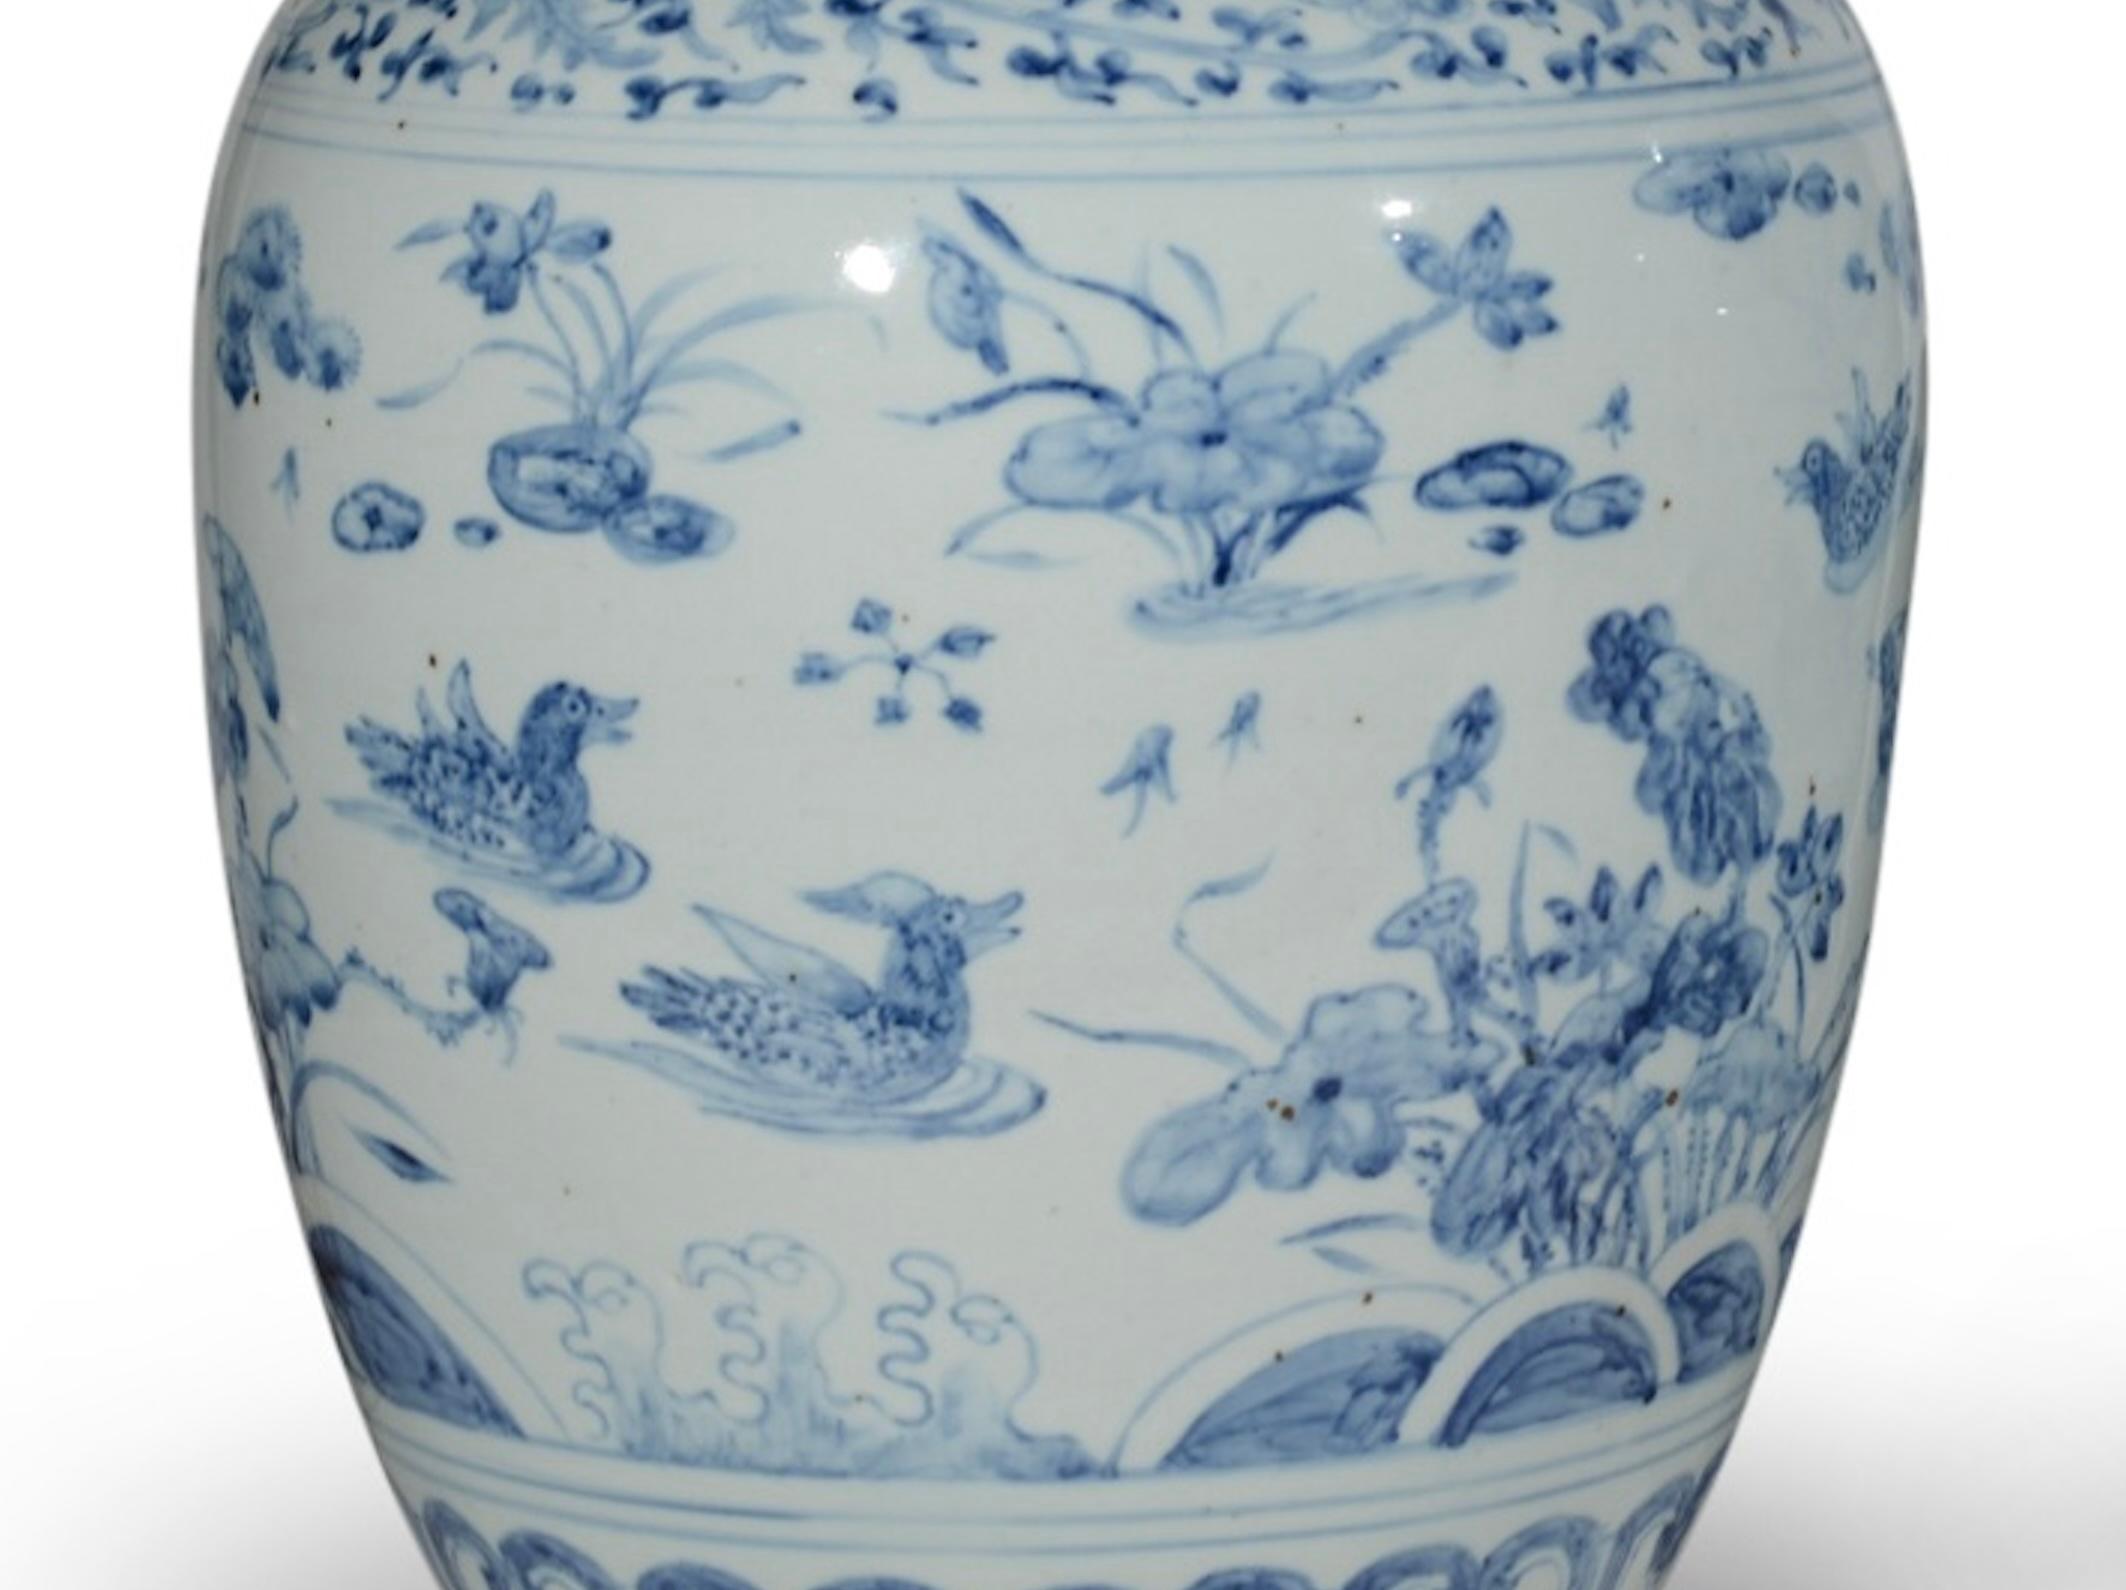 Un beau vase chinois bleu et blanc, décoré dans le style Kangxi, avec des canards nageant dans un paysage aquatique. Maintenant montée comme une lampe avec une base tournée et dorée à la main.

Hauteur du vase : 15 1/2 in (39 cm) y compris la base